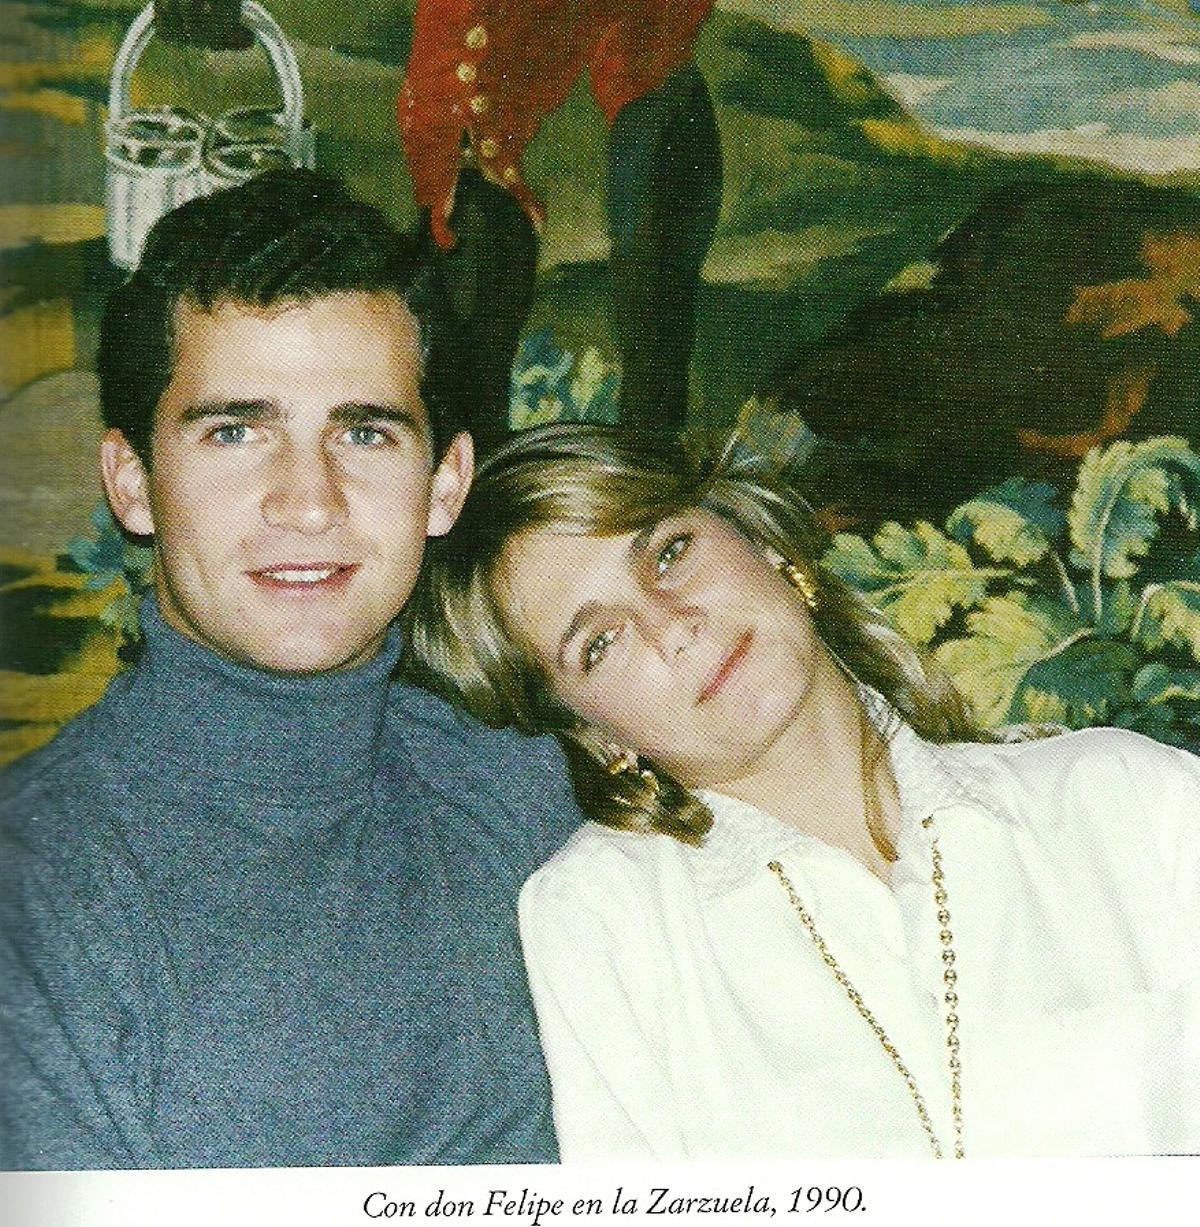 Felipe VI, cuando era príncipe, e Isabel Sartorius, en el Palacio de la Zarzuela en 1990.